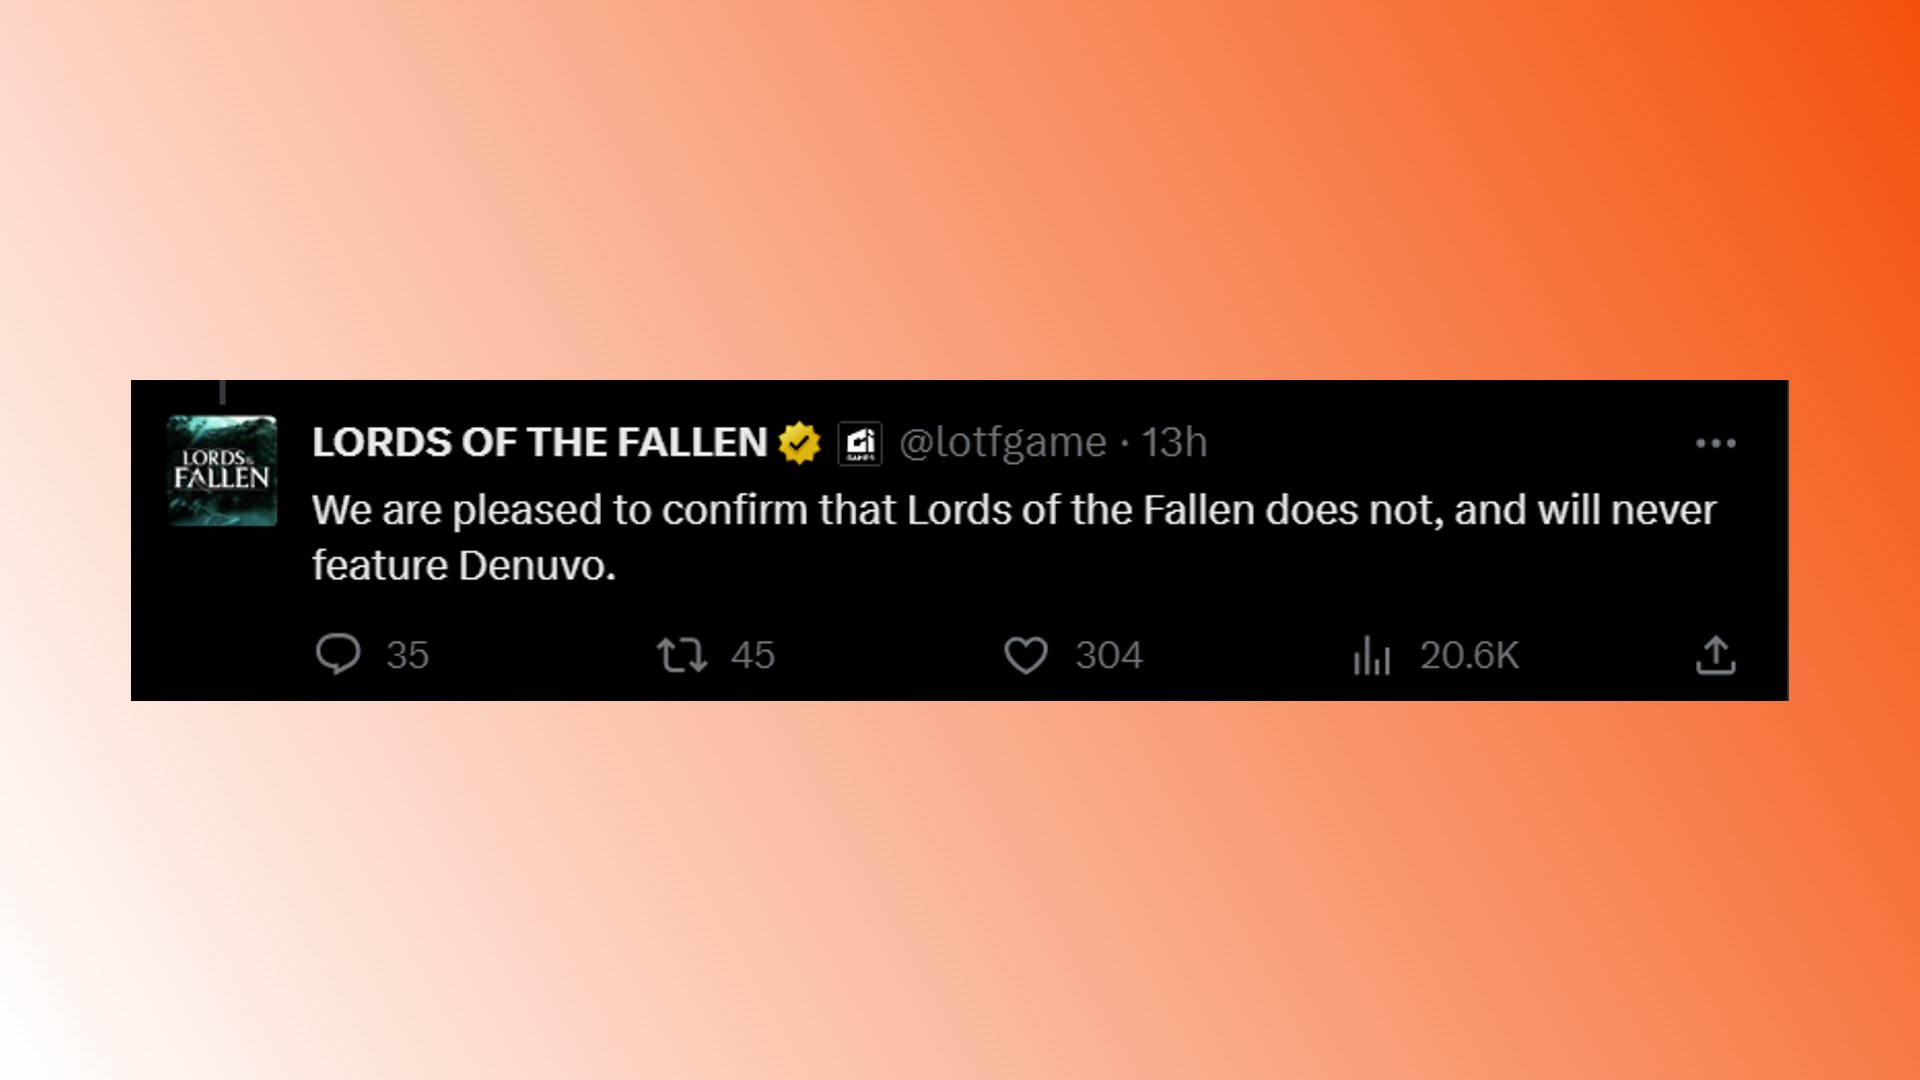 Lords of the Fallen Denuvo: RPG oyun geliştiricisi Hexworks'ten Lords of the Fallen'daki Denuvo ile ilgili bir tweet